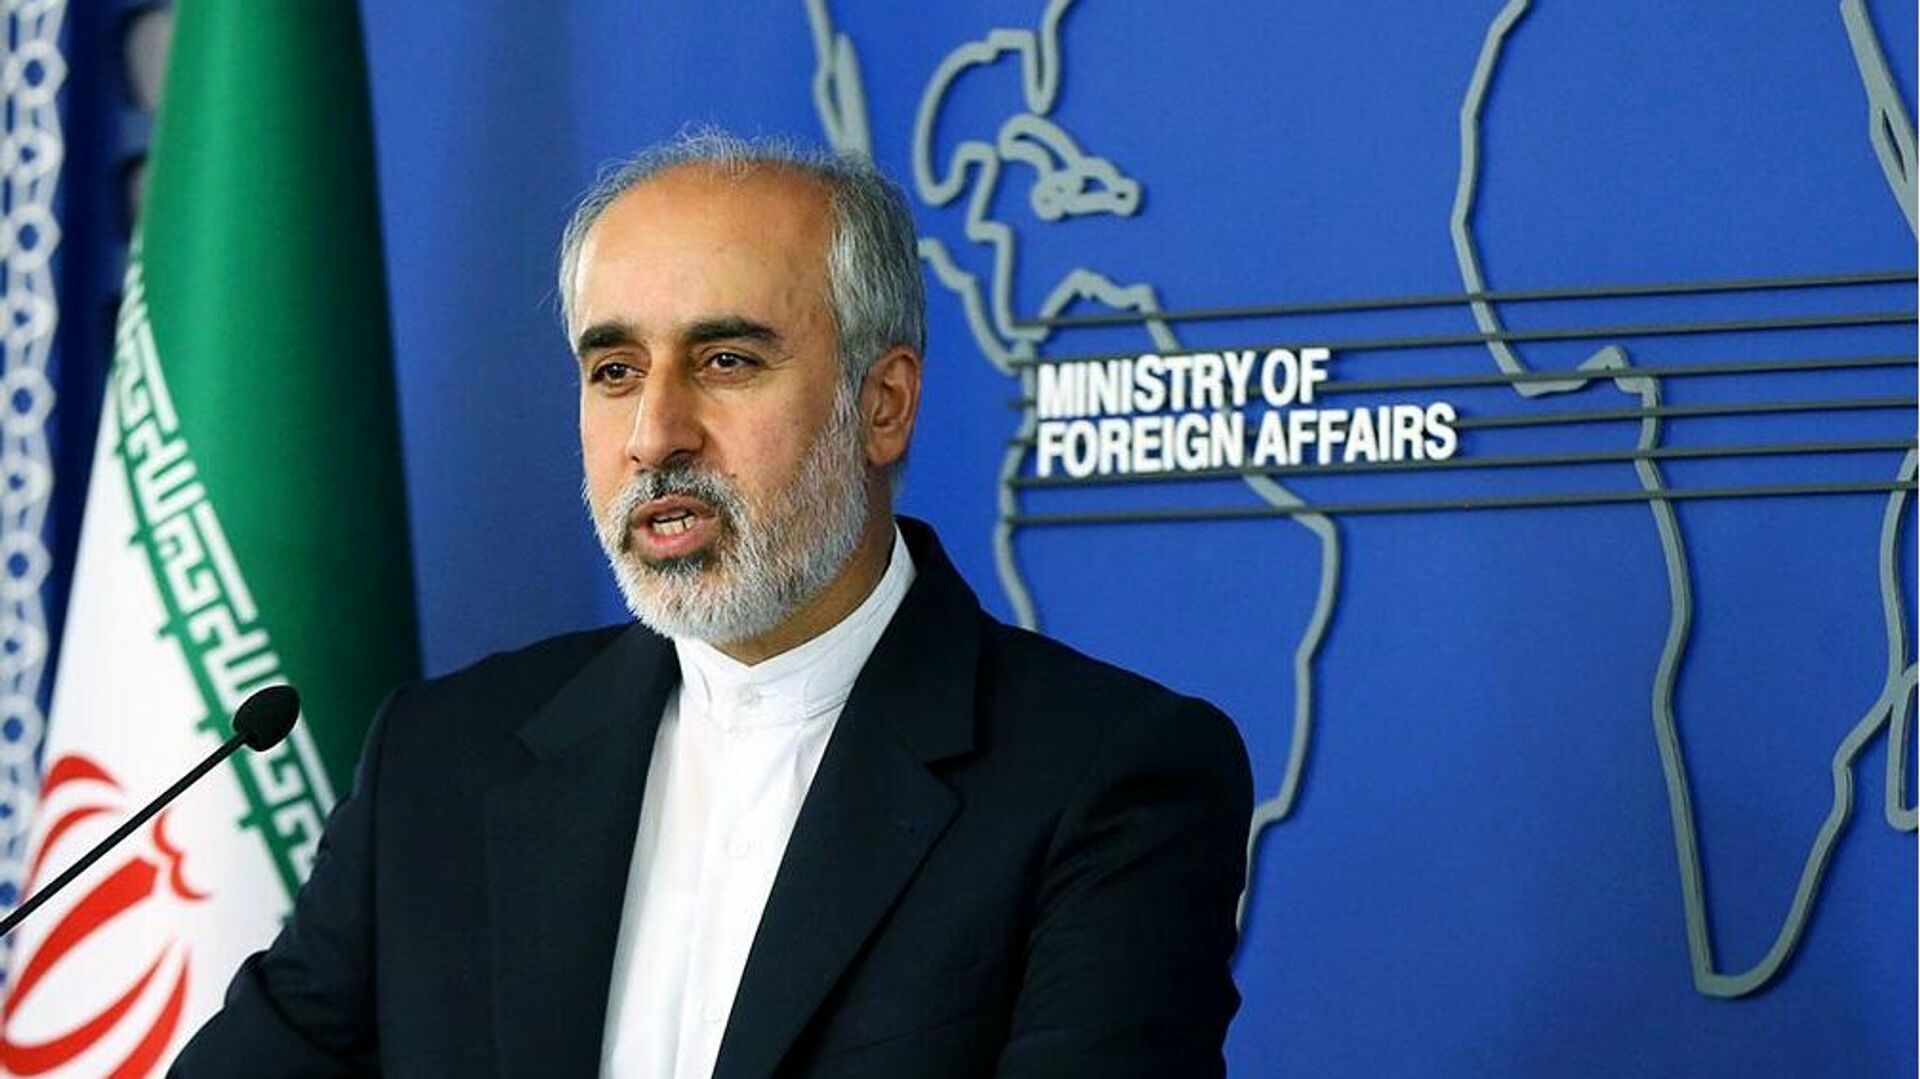 واکنش صریح ایران به بیانیه مسکو/ اعتراض رسمی ایران به دولت روسیه